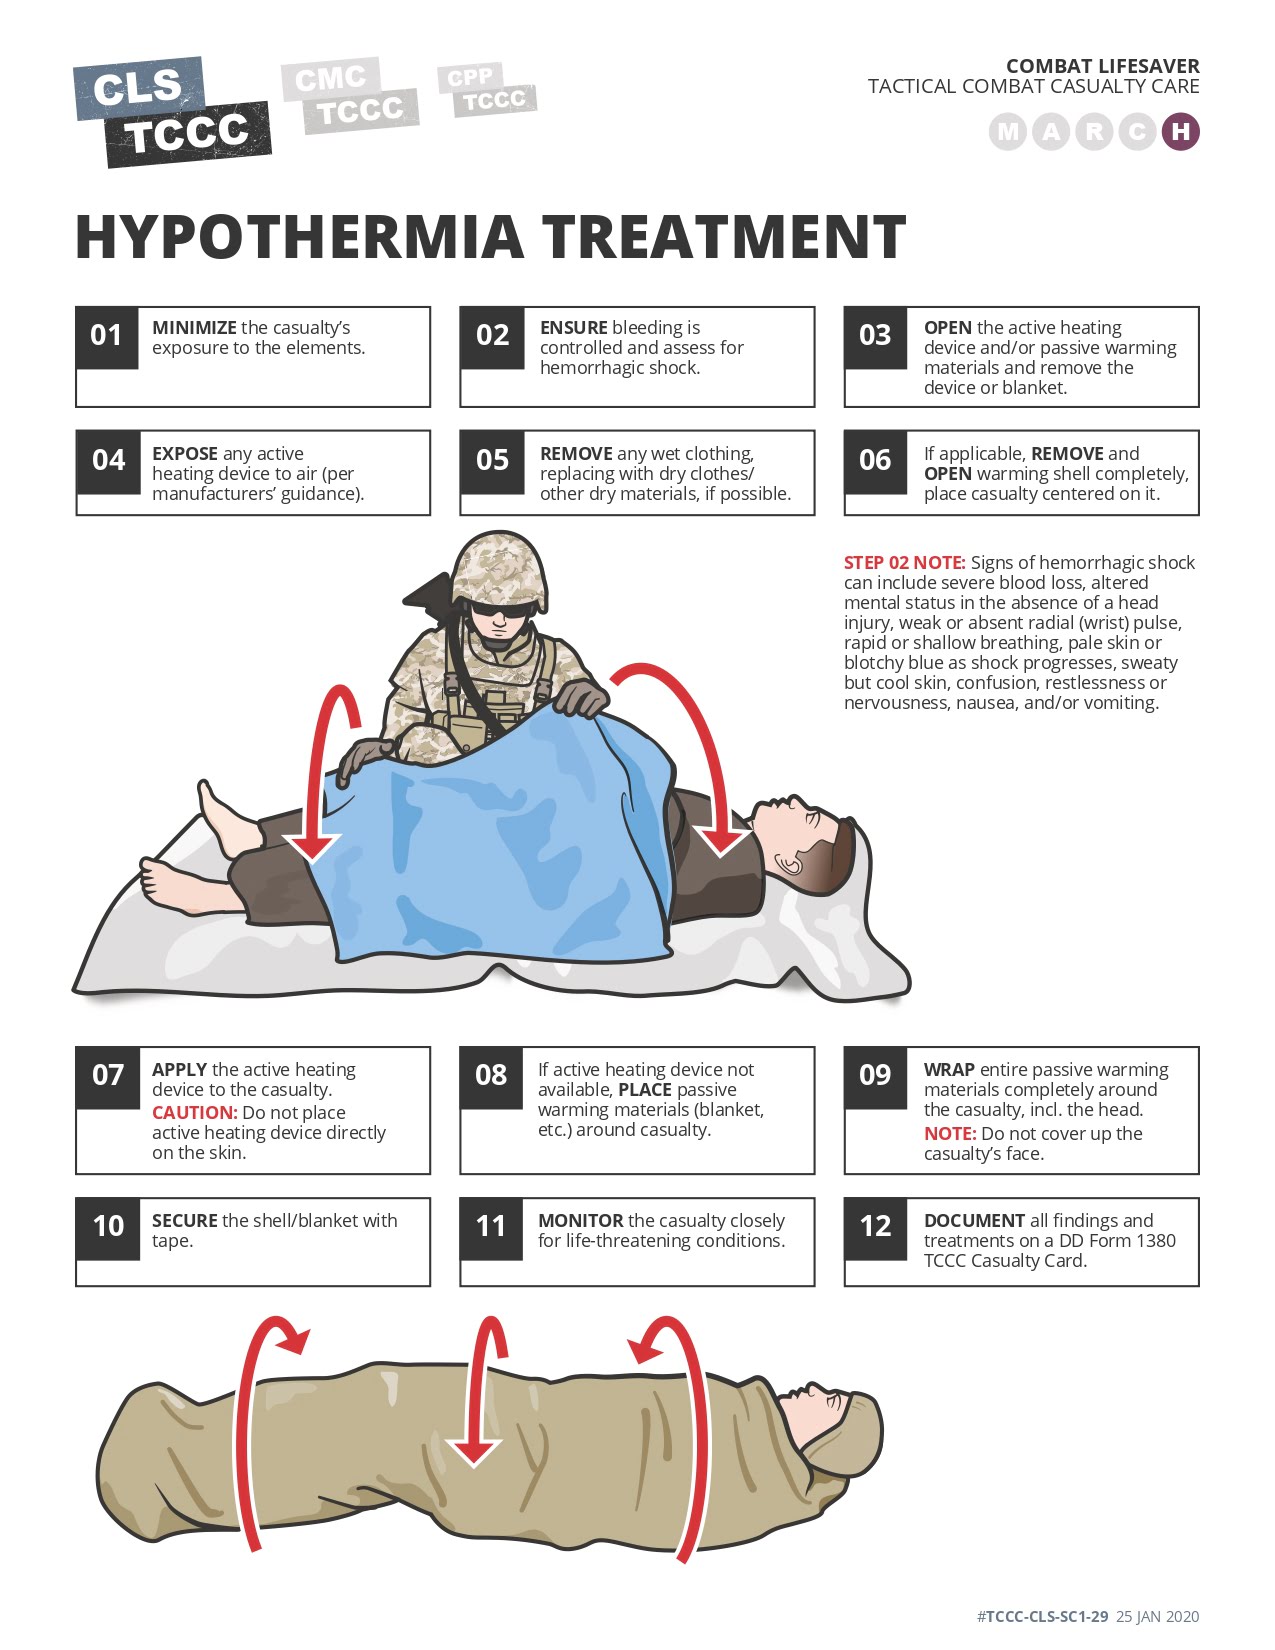 Hypothermia Treatment